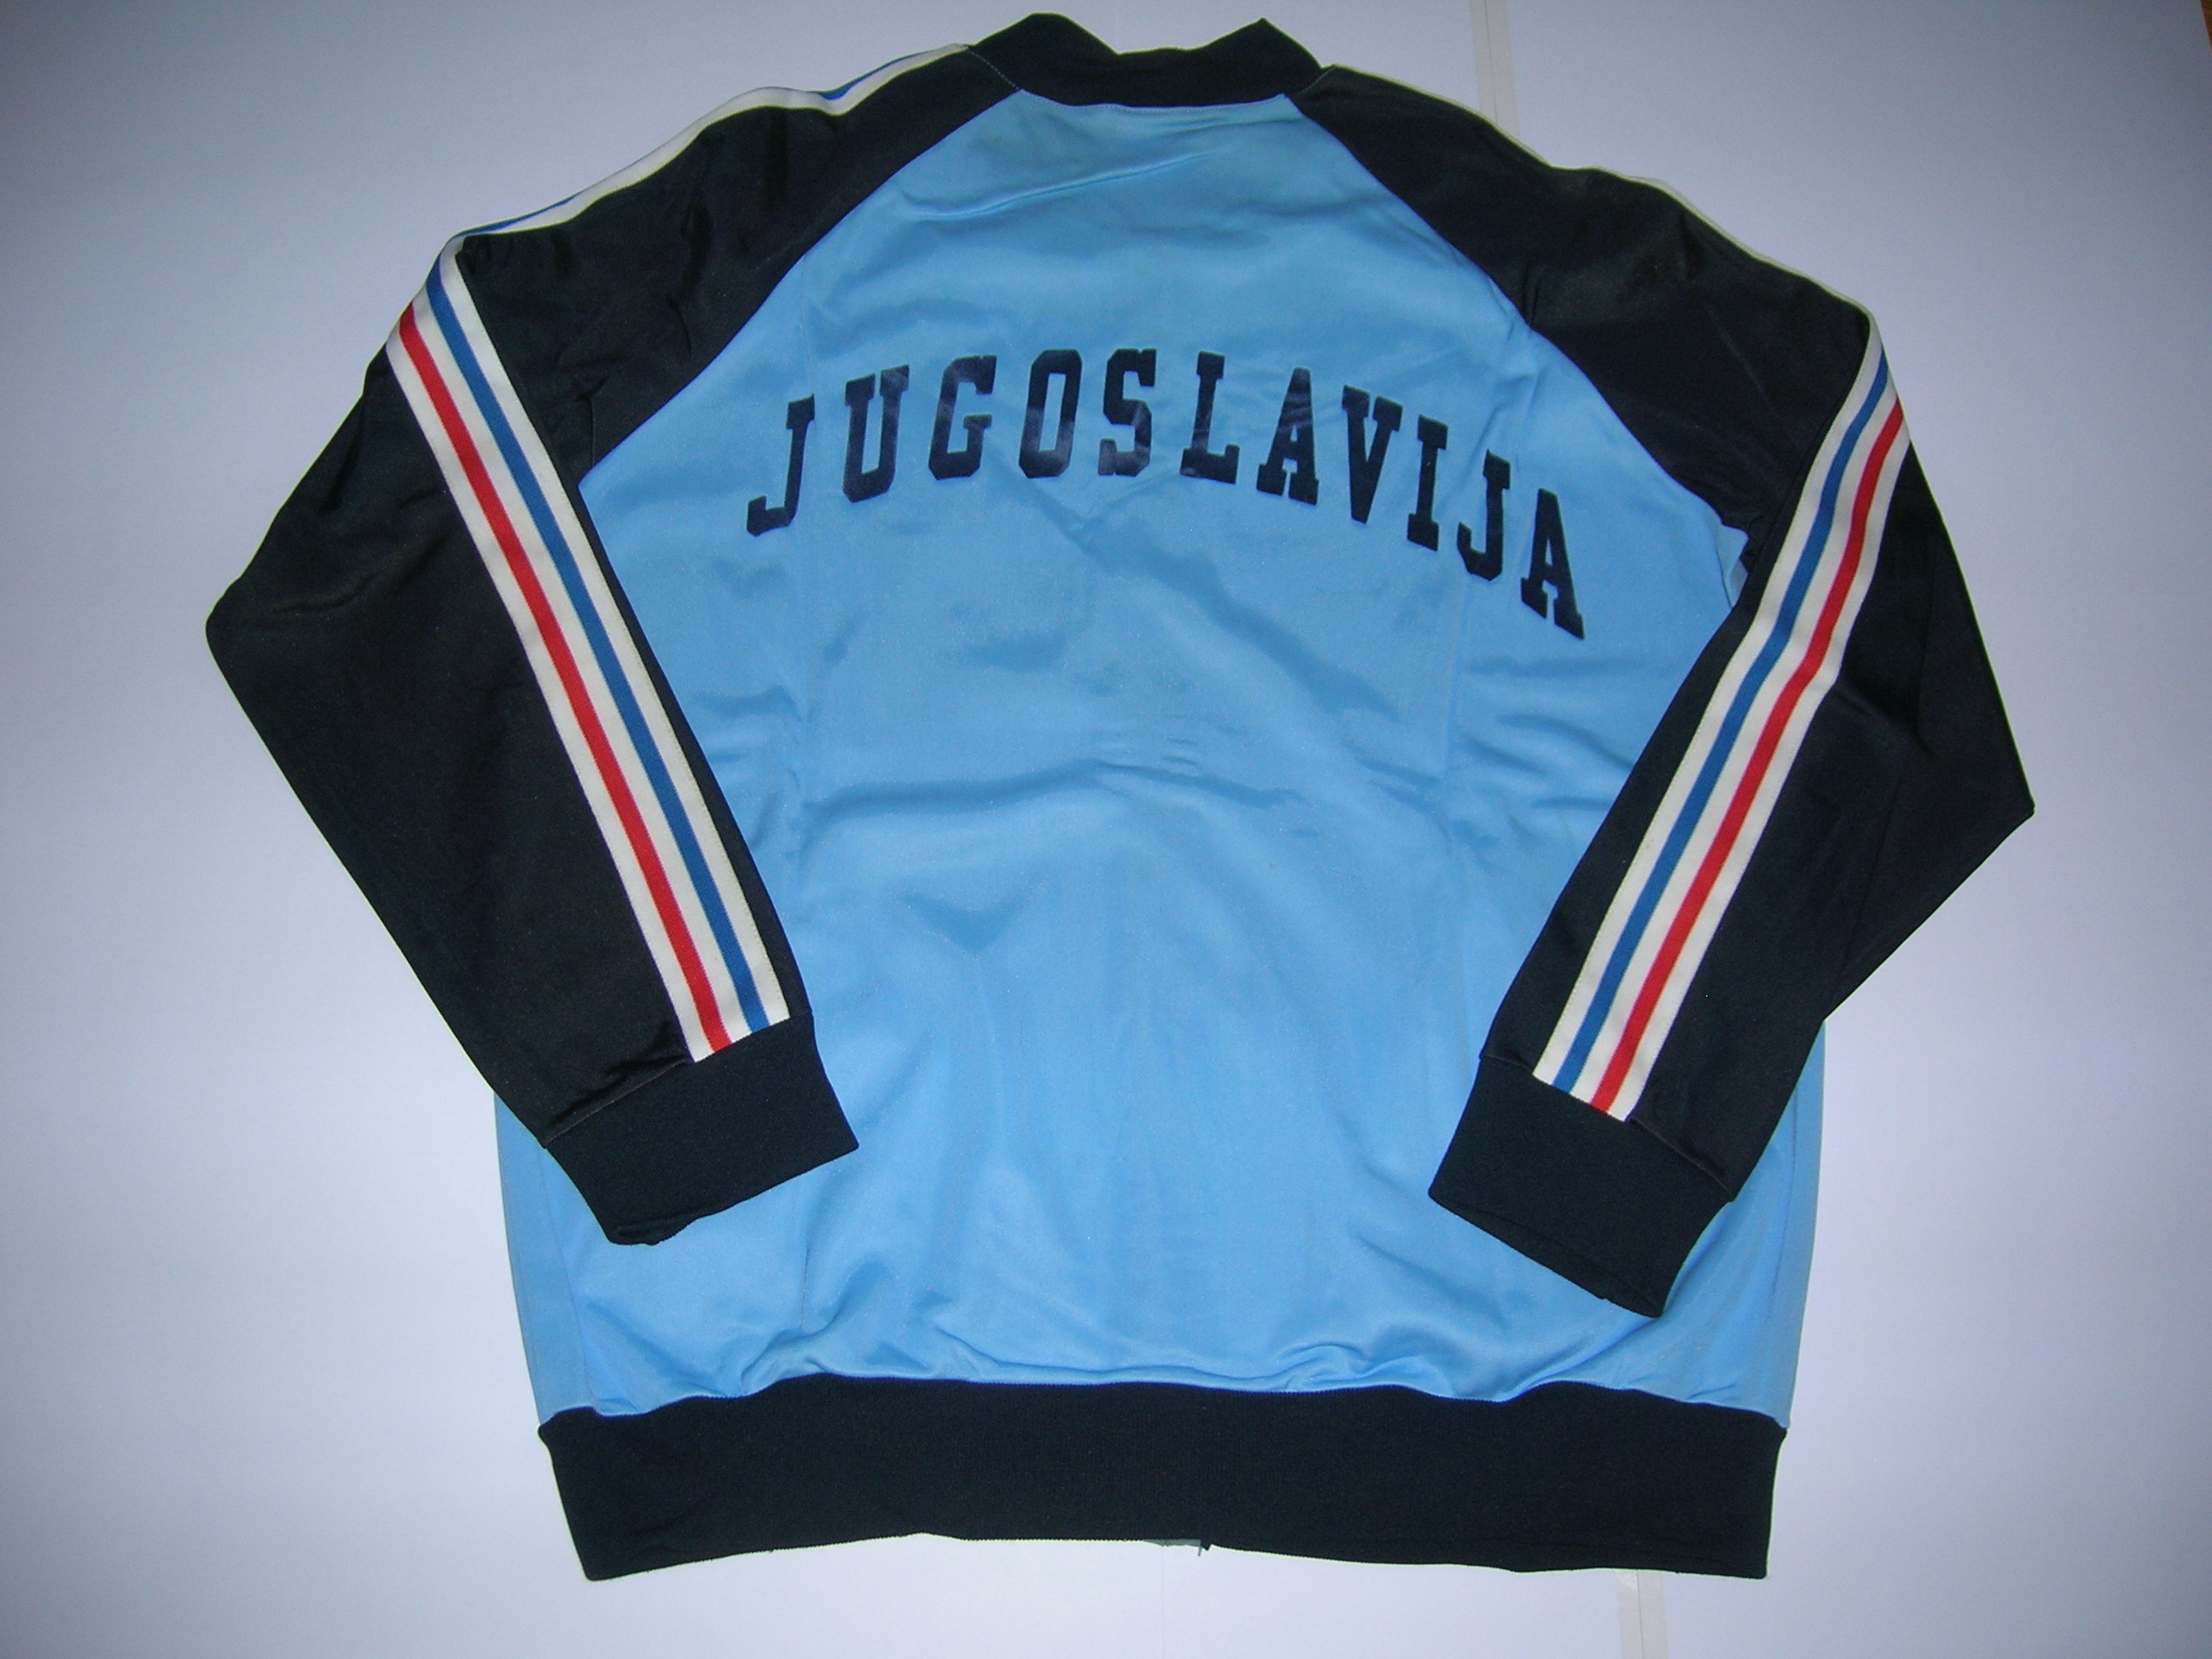 Tuta della nazionale Jugoslavija  fine anni 80   A-4